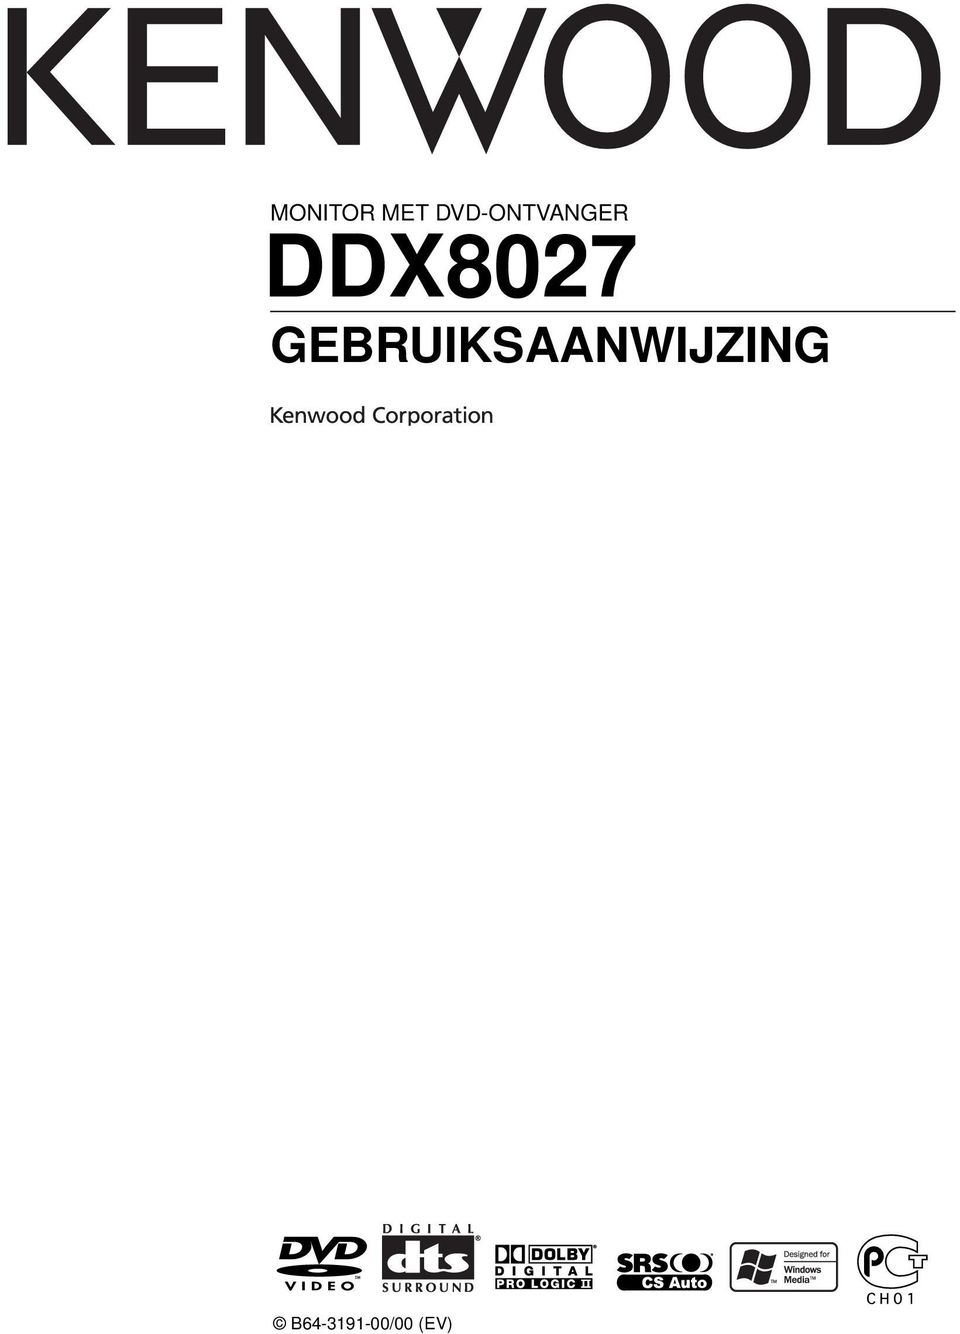 DDX807